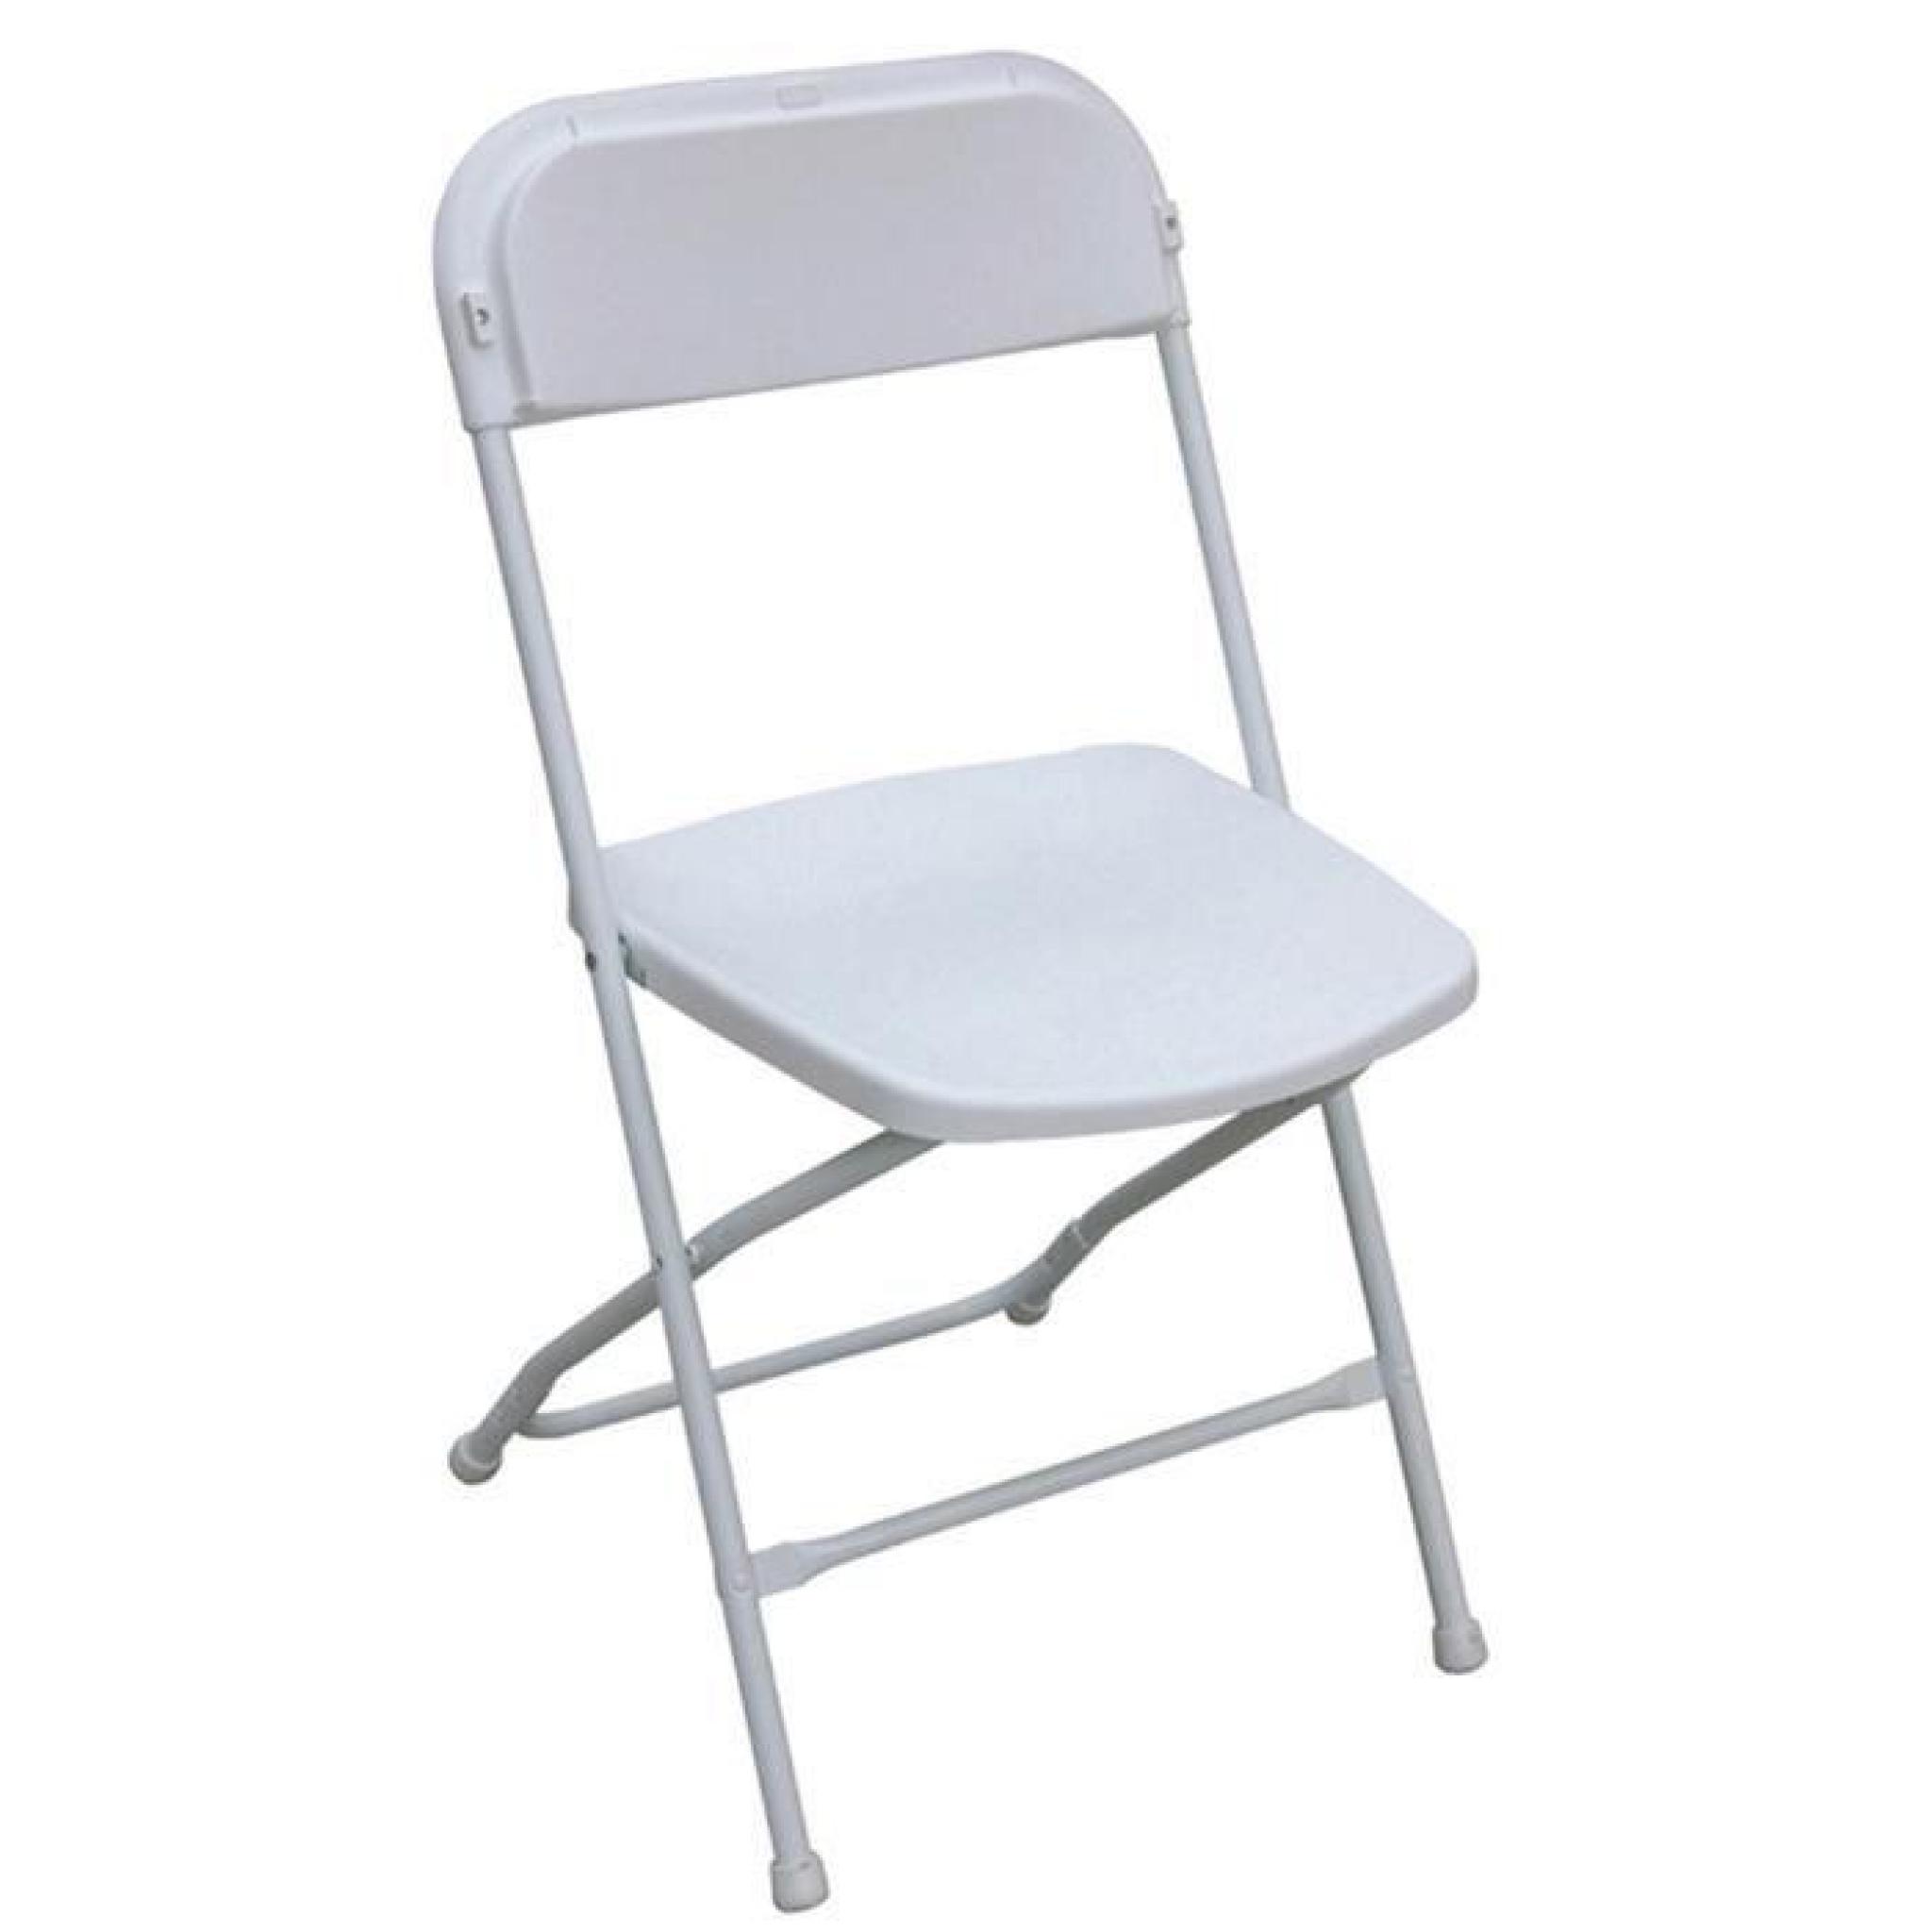 Chaise pliante en polypropylène pour restauration coloris blanc - Dim : H 81 x L 45 x P 58 cm